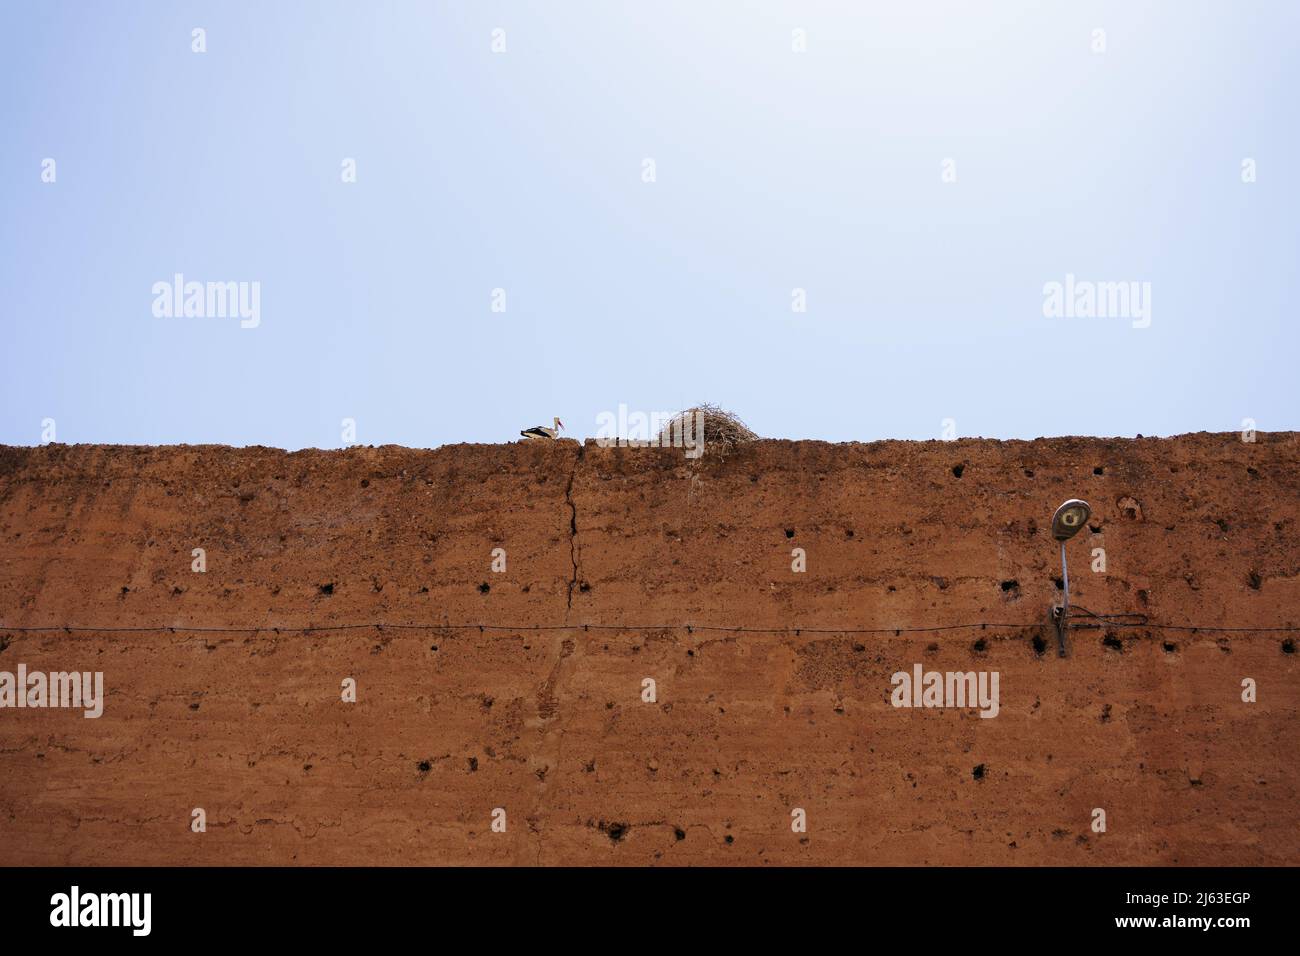 Cicogne e nidificano sulle mura della città vecchia di Marrakech, Marocco, Medina. Foto di alta qualità Foto Stock